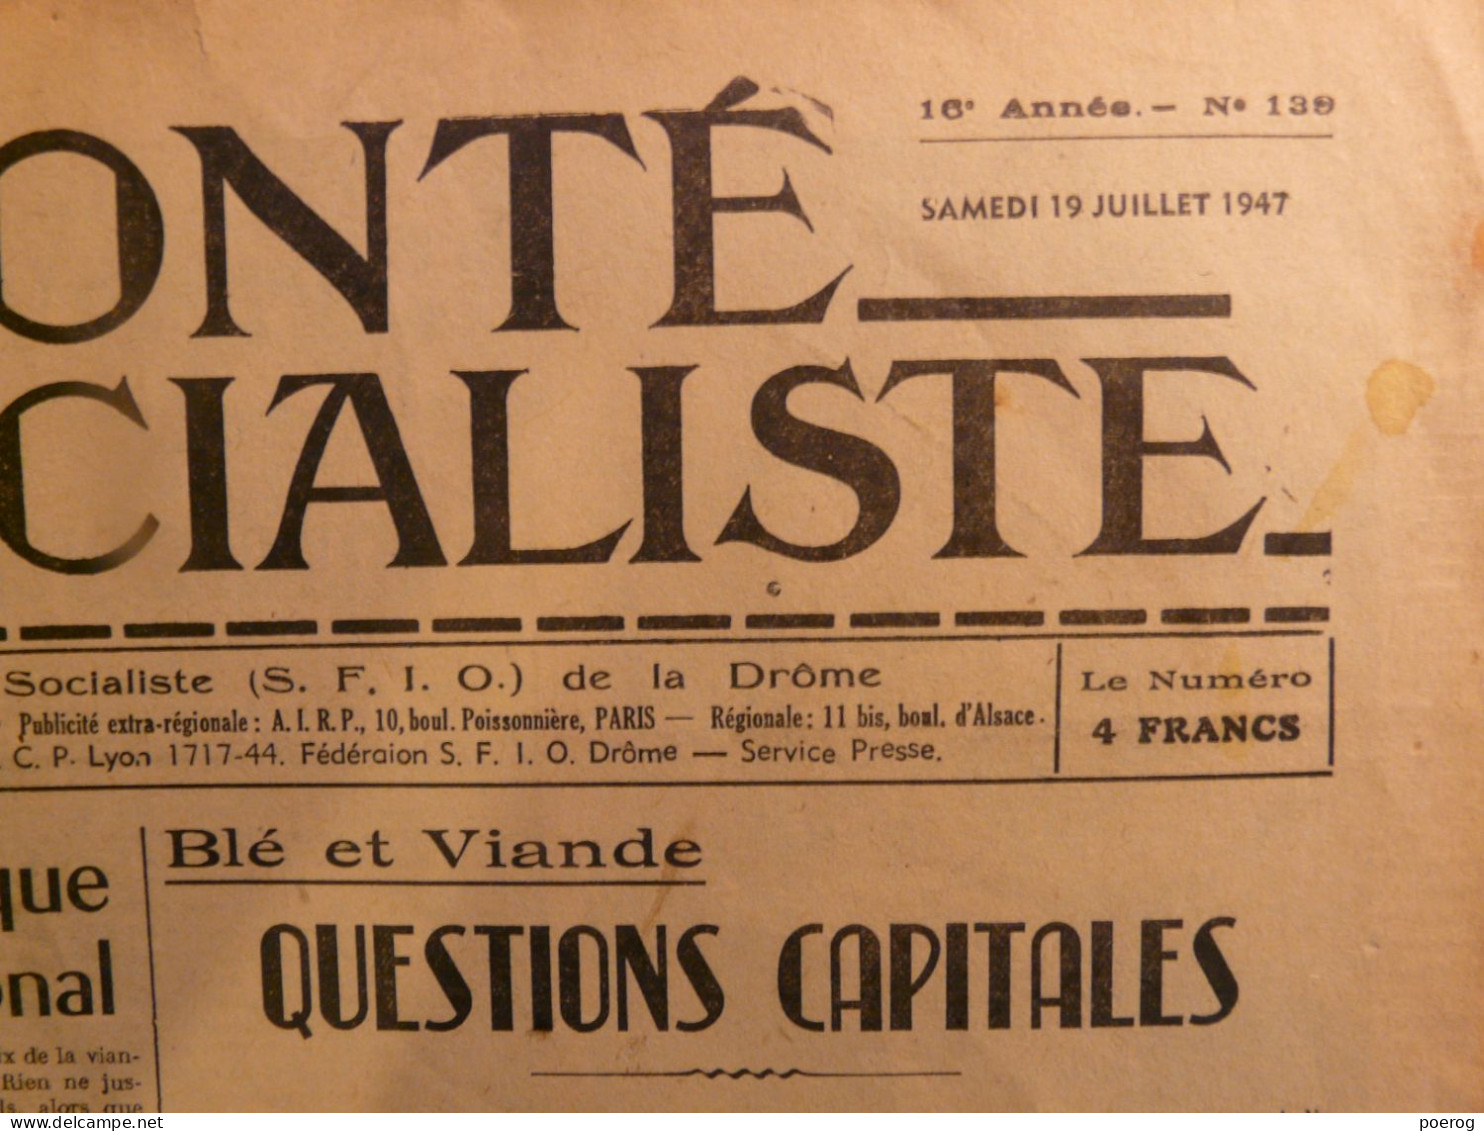 LA VOLONTE SOCIALISTE Du 19 JUILLET 1947 - BLE ET VIANDE QUESTIONS CAPITALES - SFIO DE LA DROME - SYNDICALISME - Testi Generali